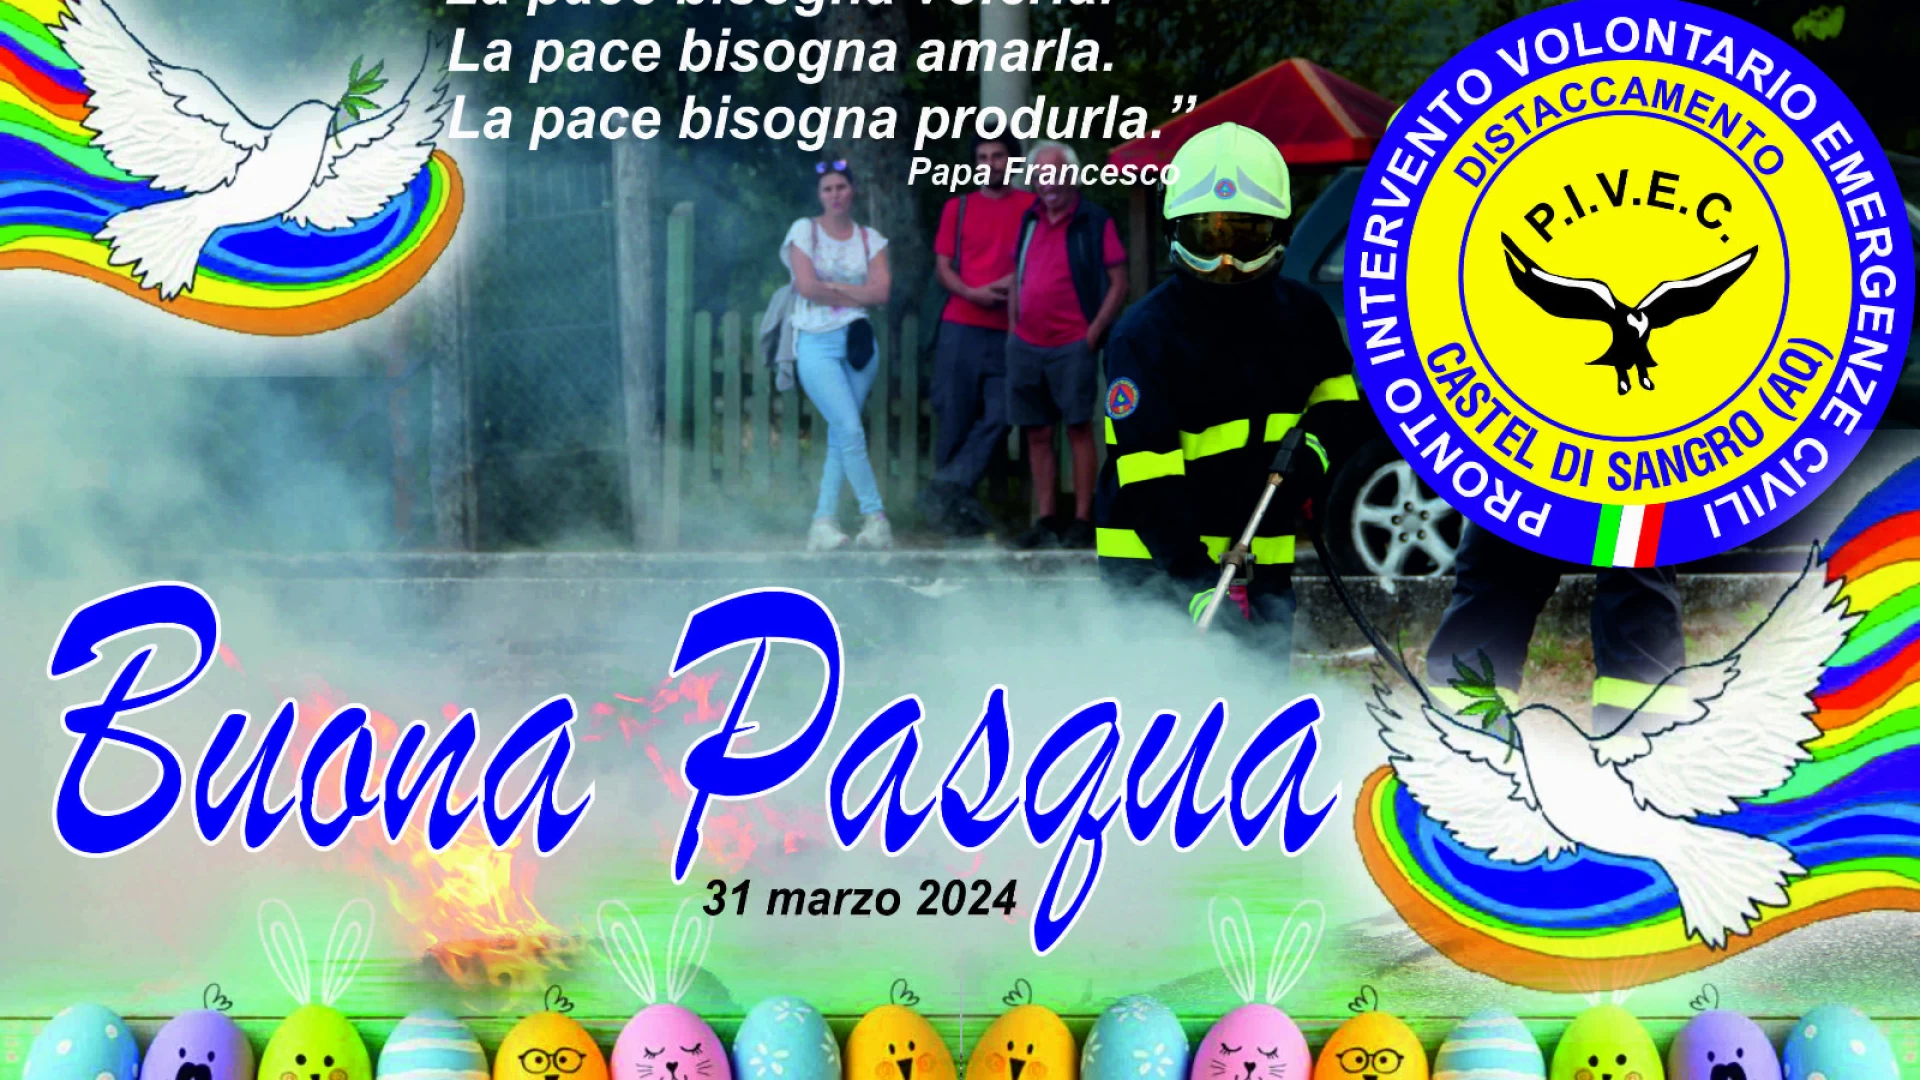 Serena Pasqua a tutti dalla nostra redazione e da tutti i volontari del Distaccamento Pivec di Castel Di Sangro.